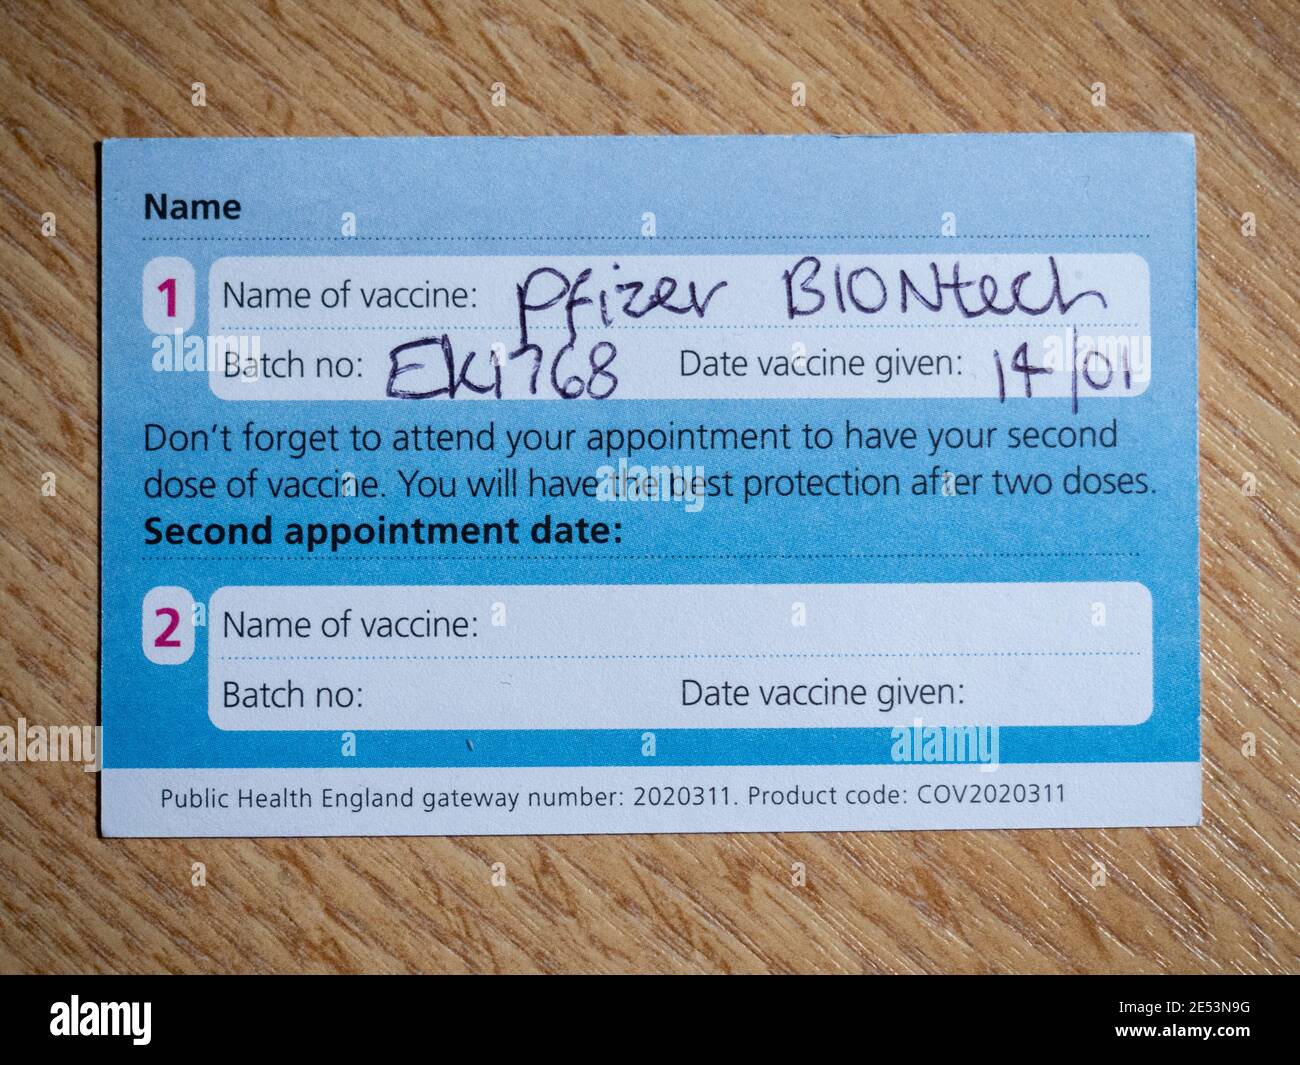 Inversione di una scheda di registrazione della vaccinazione NHS Covid-19 che indica che l'individuo ha ricevuto la prima dose di vaccino Pfizer Biontech. Foto Stock